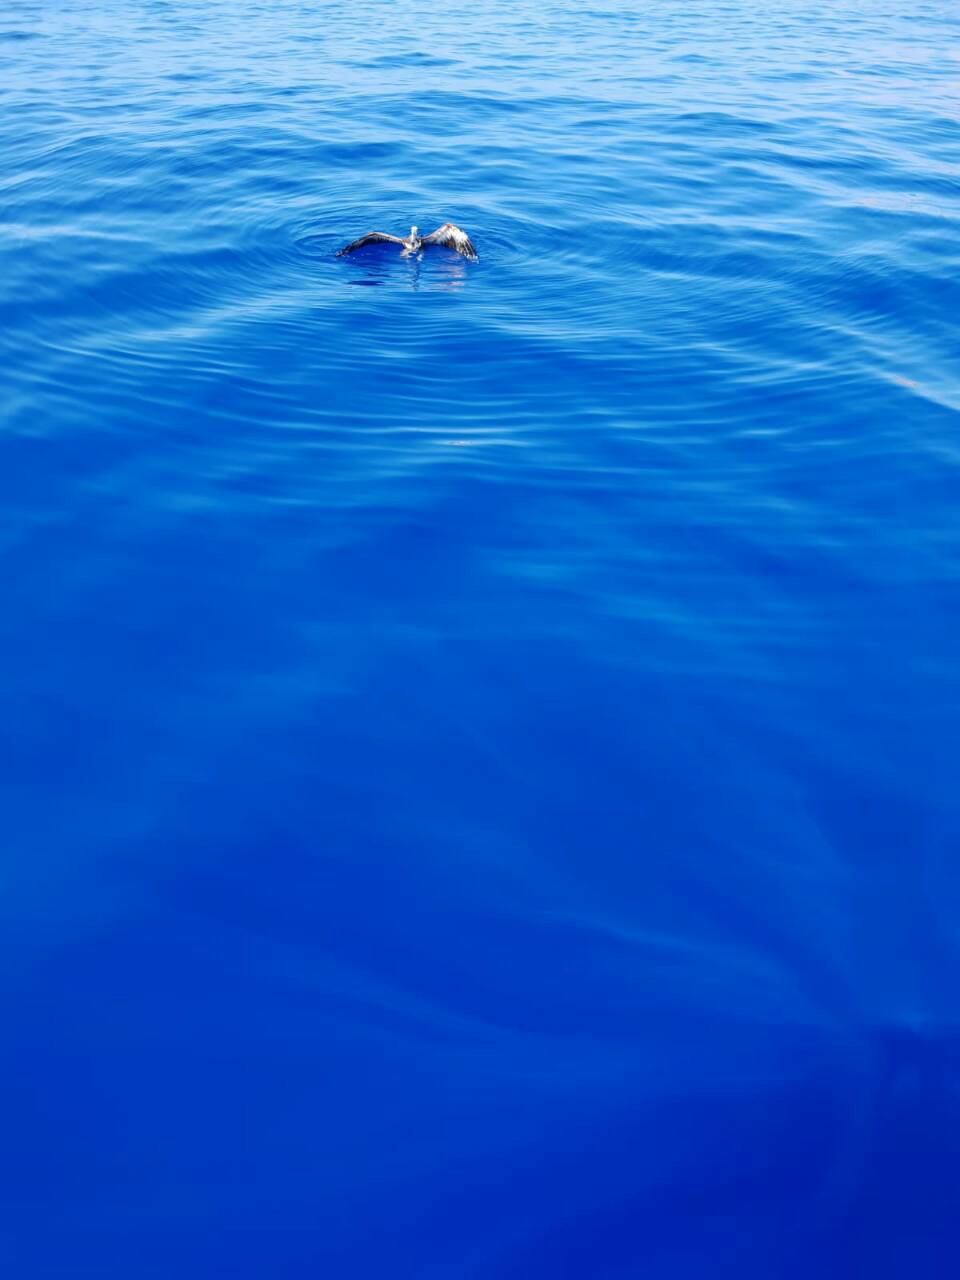 Κρήτη: Βρήκε τραυματισμένο γύπα στην θάλασσα - Φωτογραφία 2